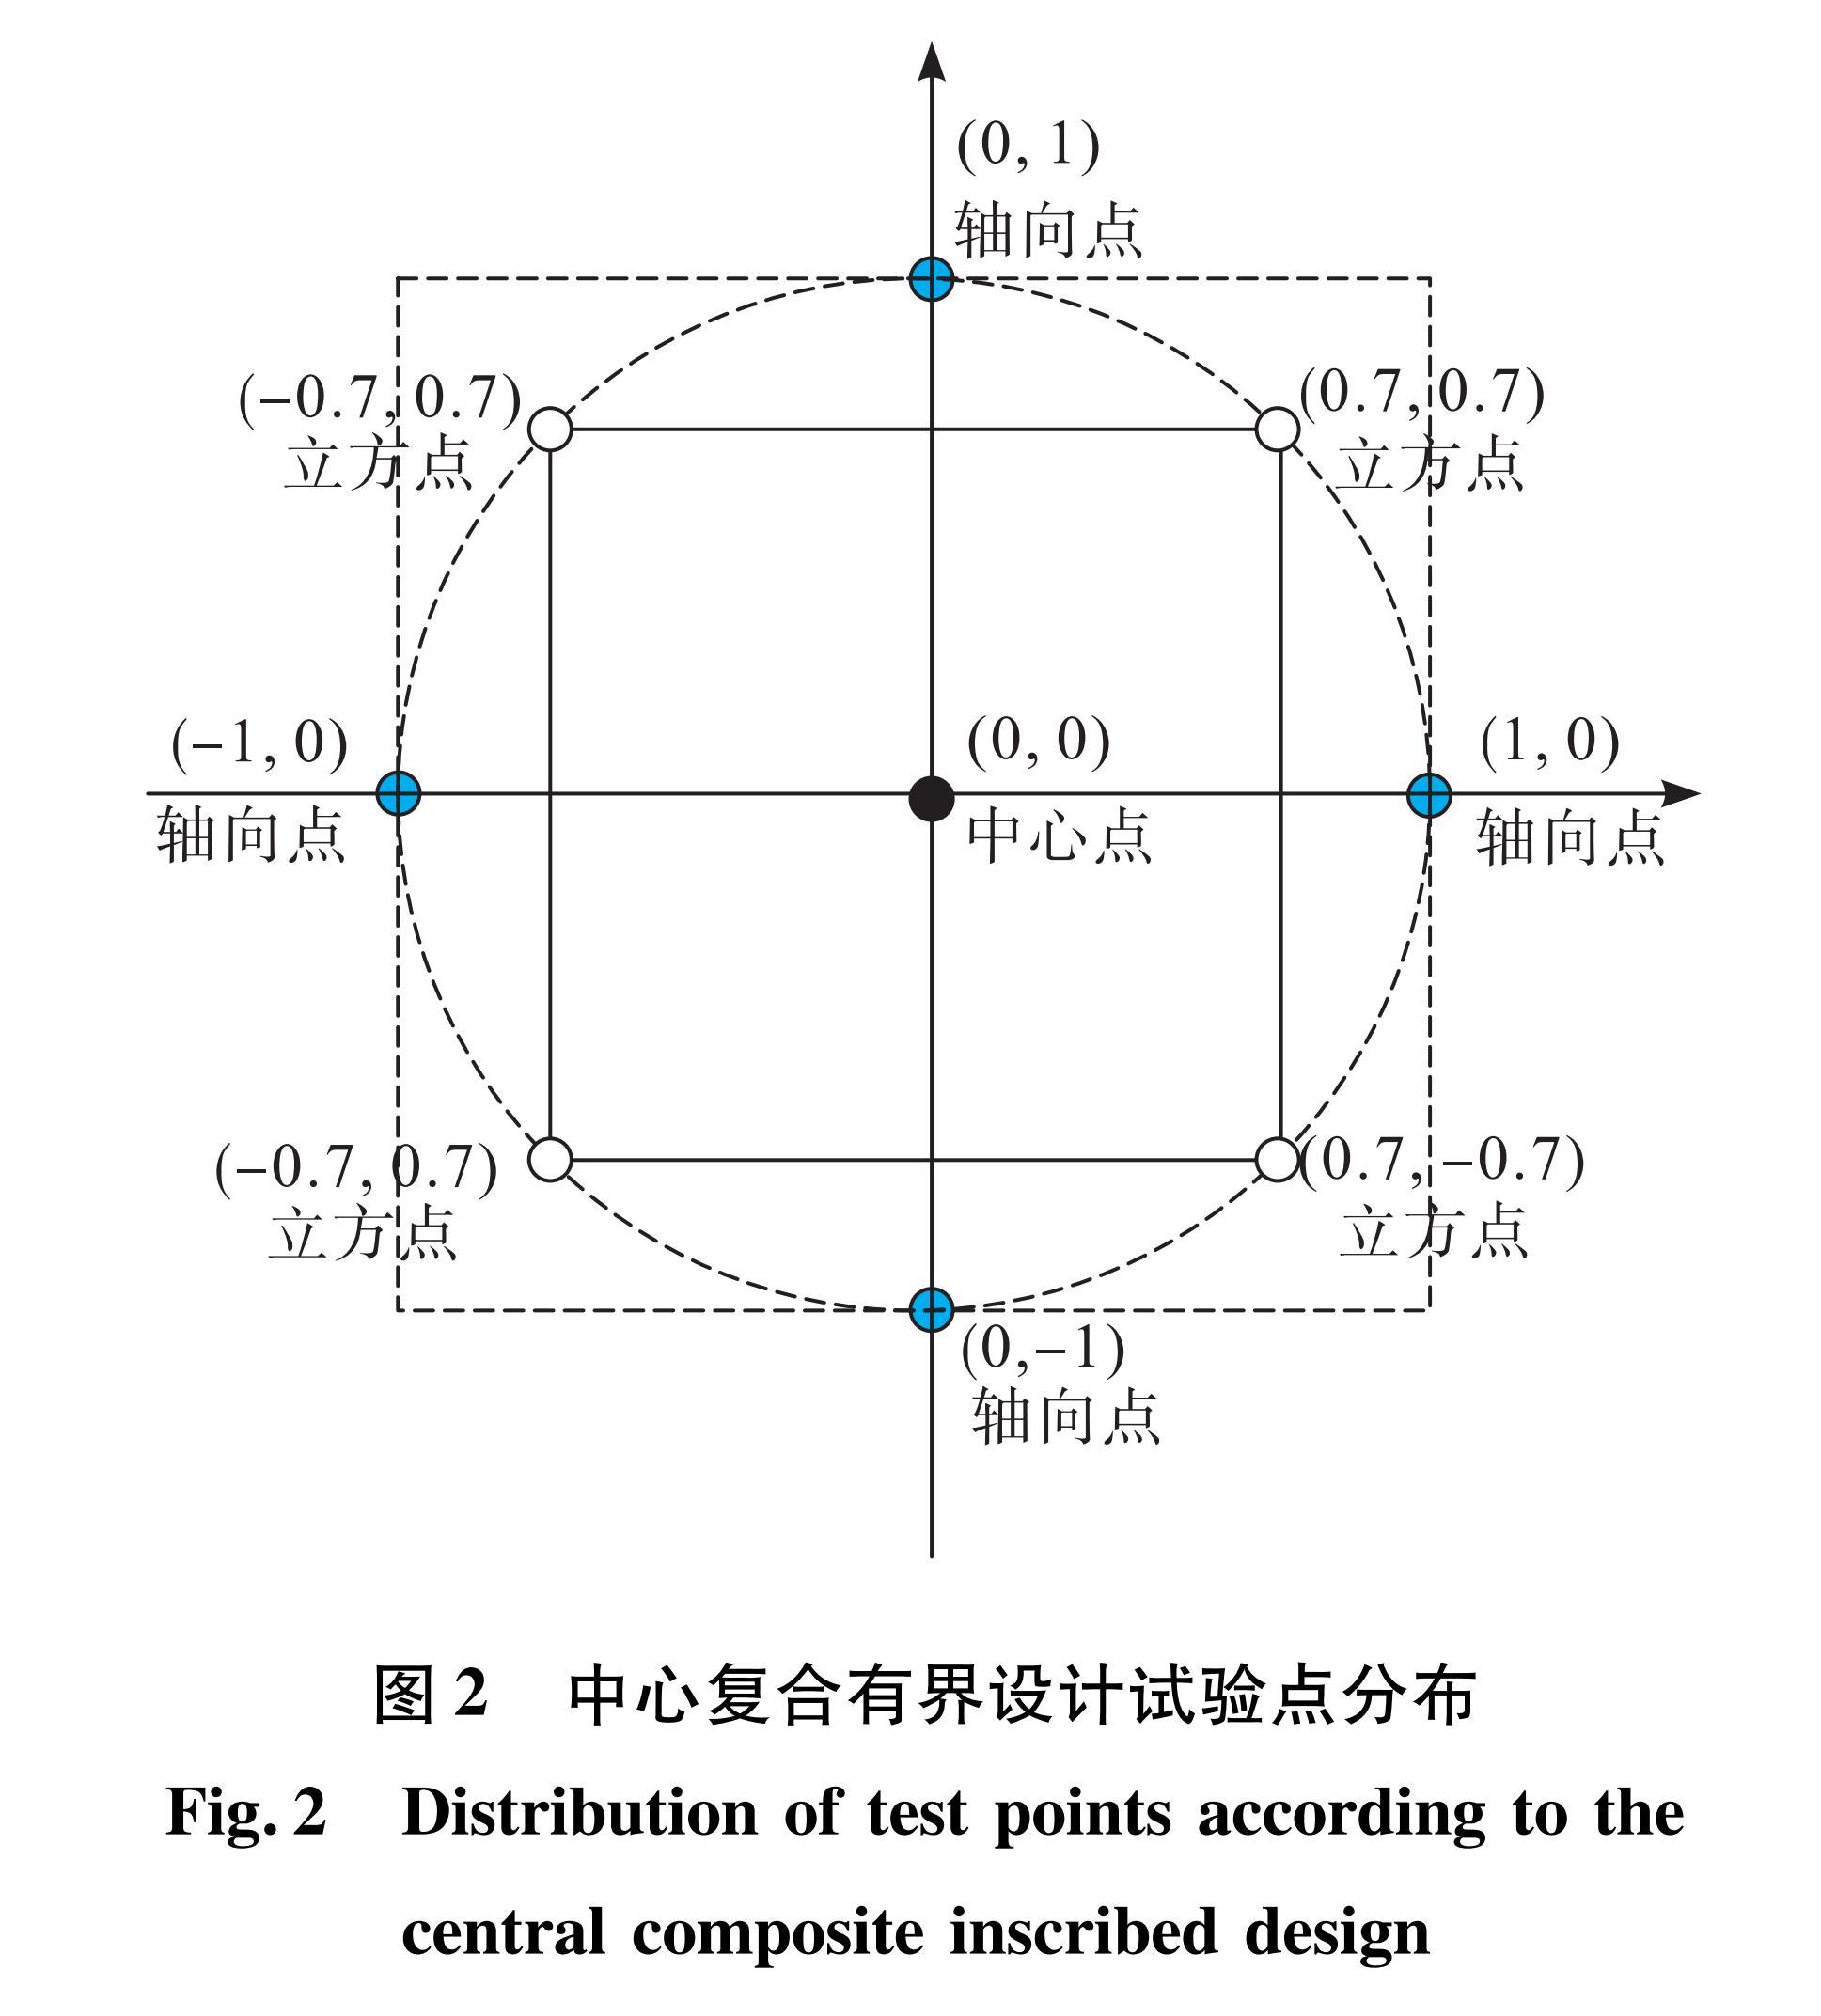 图2 中心复合有界设计试验点分布<br/>Fig.2 Distribution of test points according to the central composite inscribed design